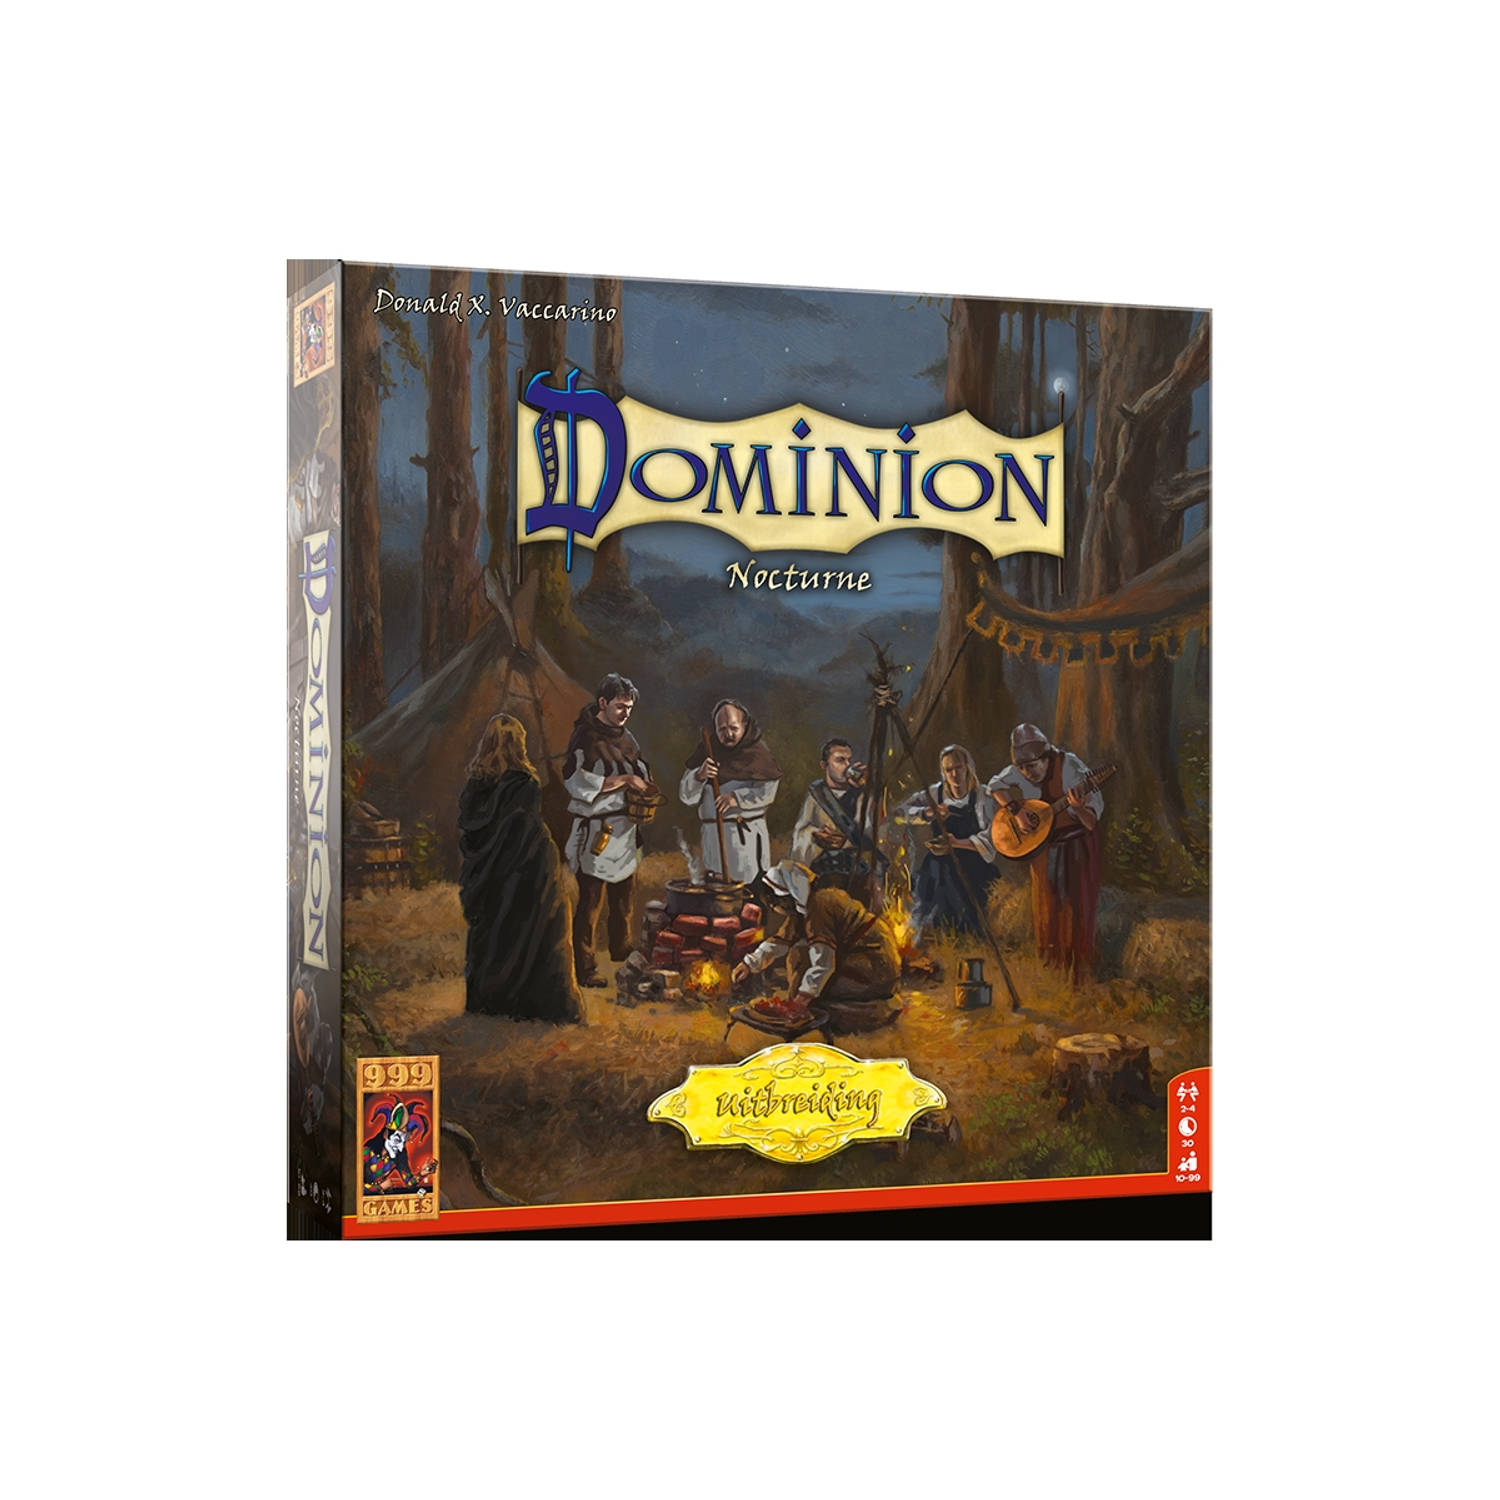 Dominion nocturne